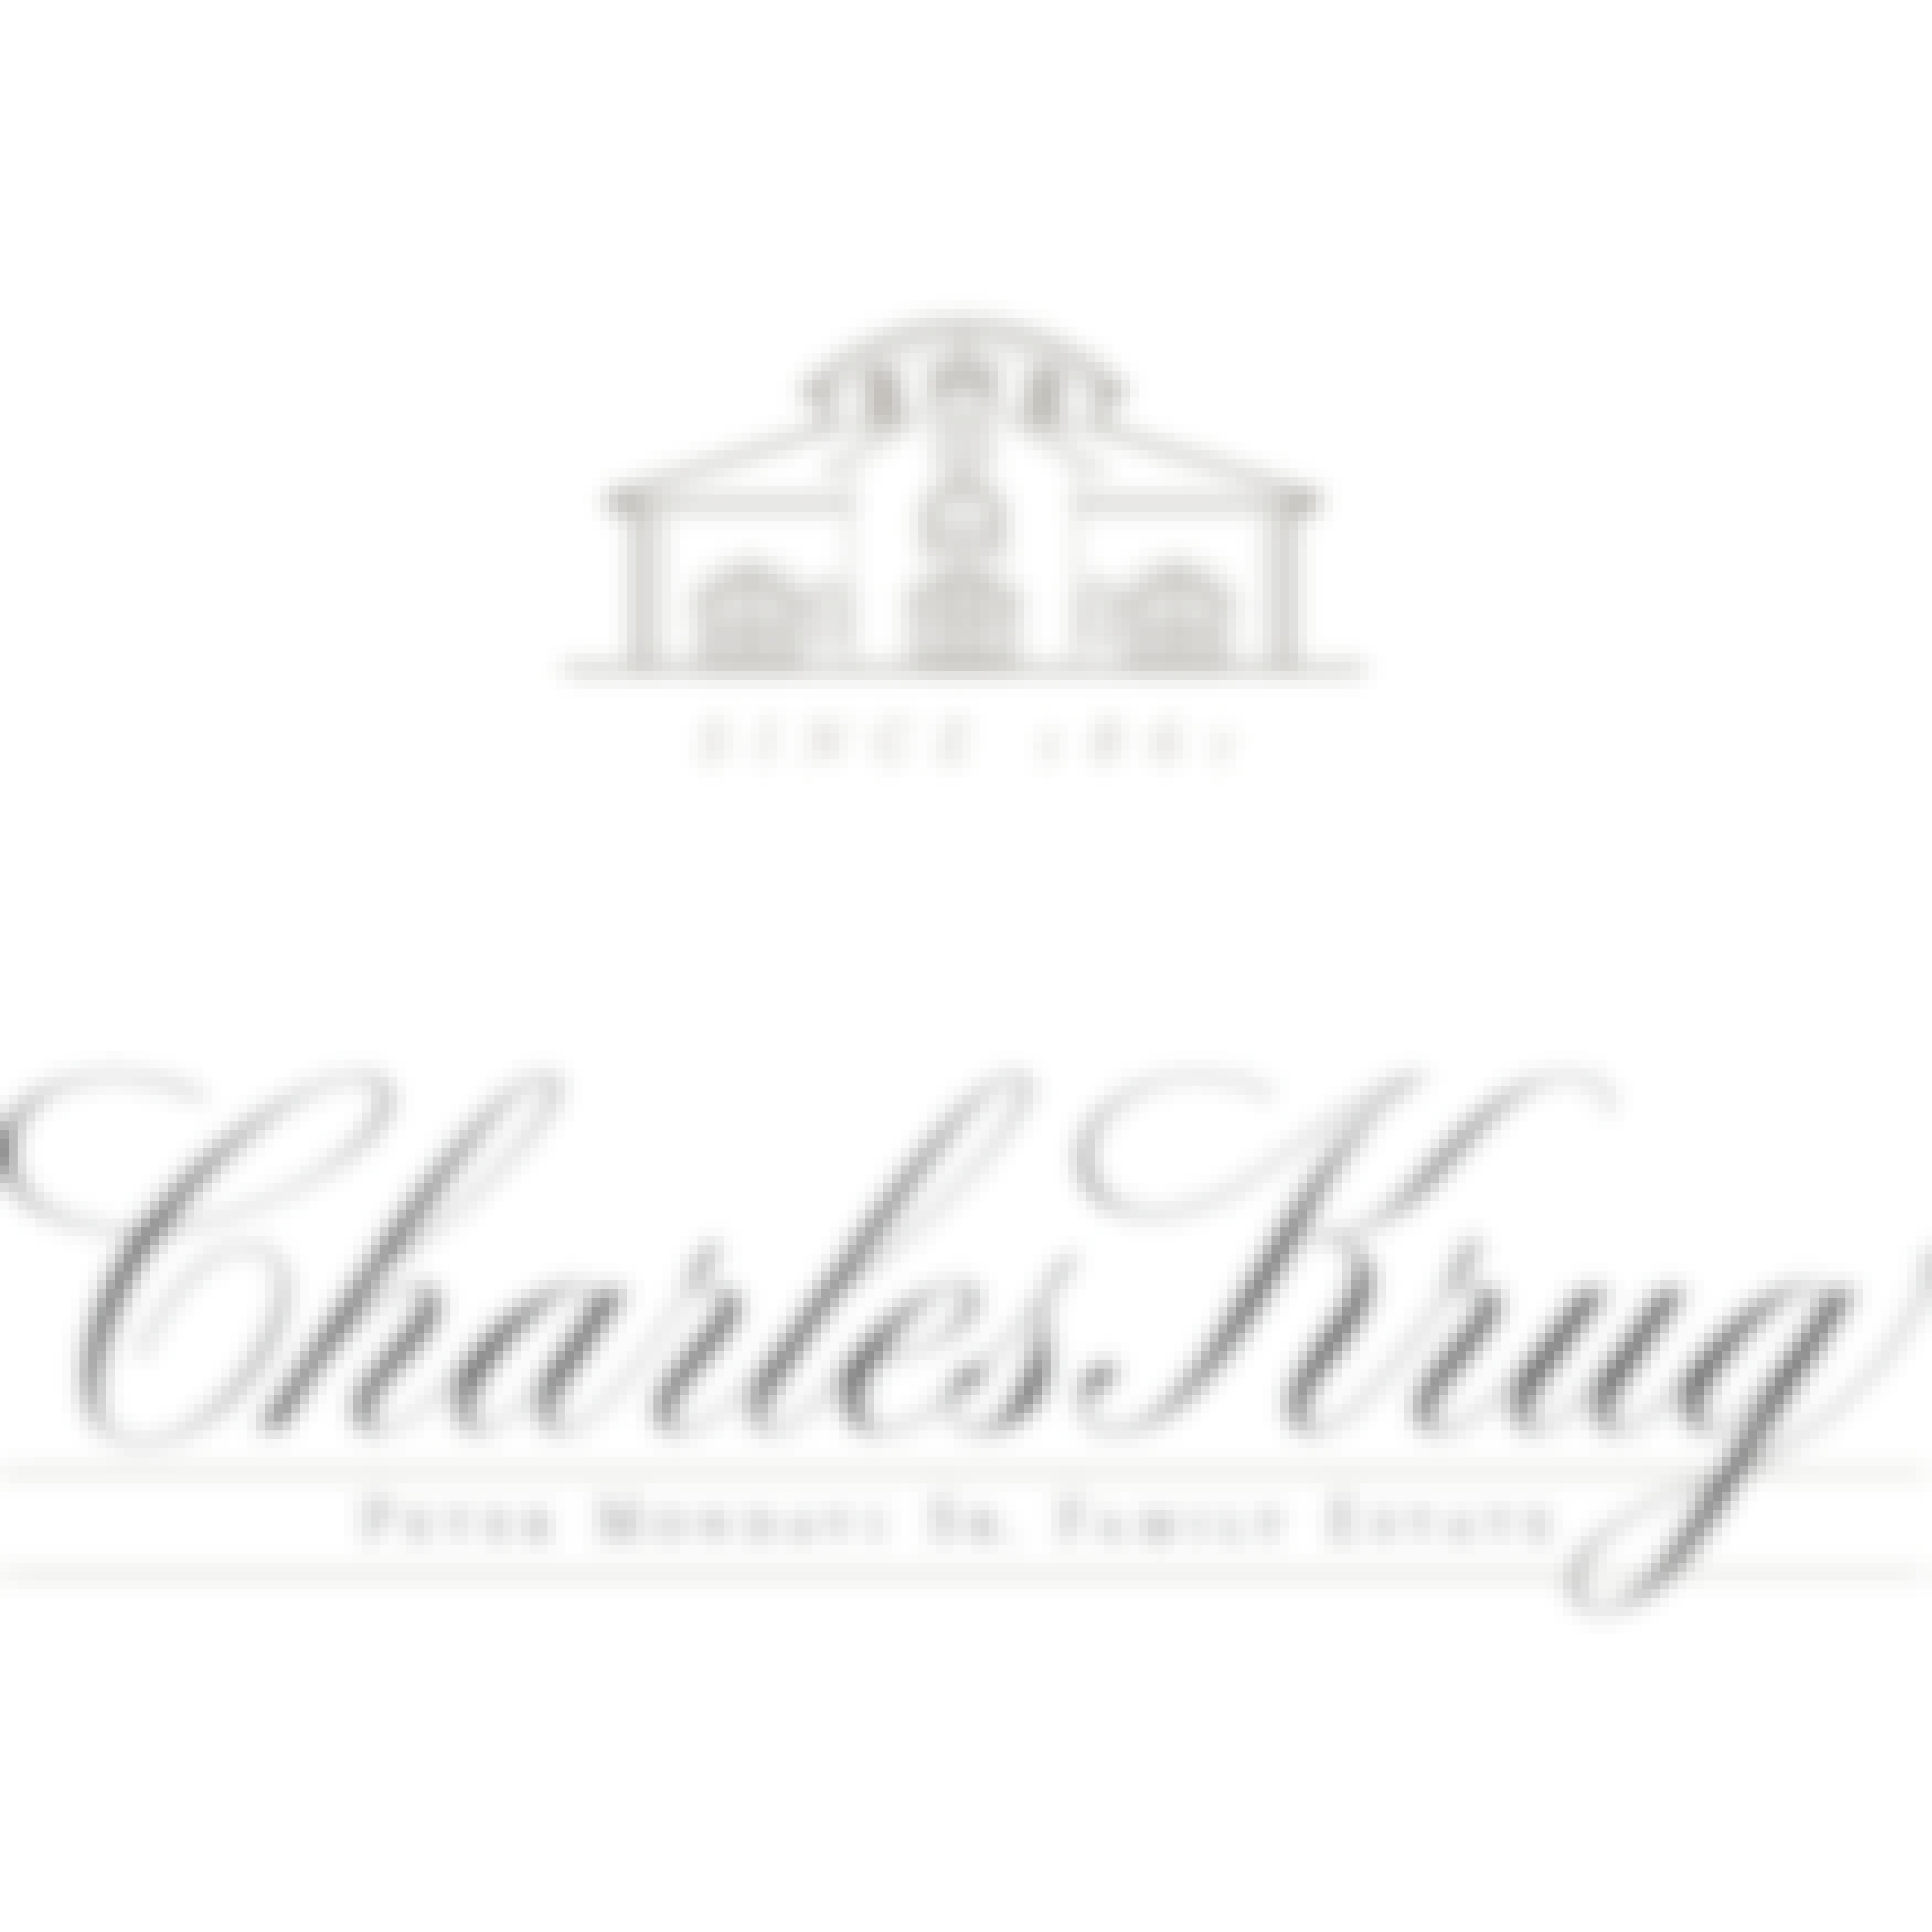 Charles Krug Limited Release Clarksburg Chenin Blanc  2018 750ml